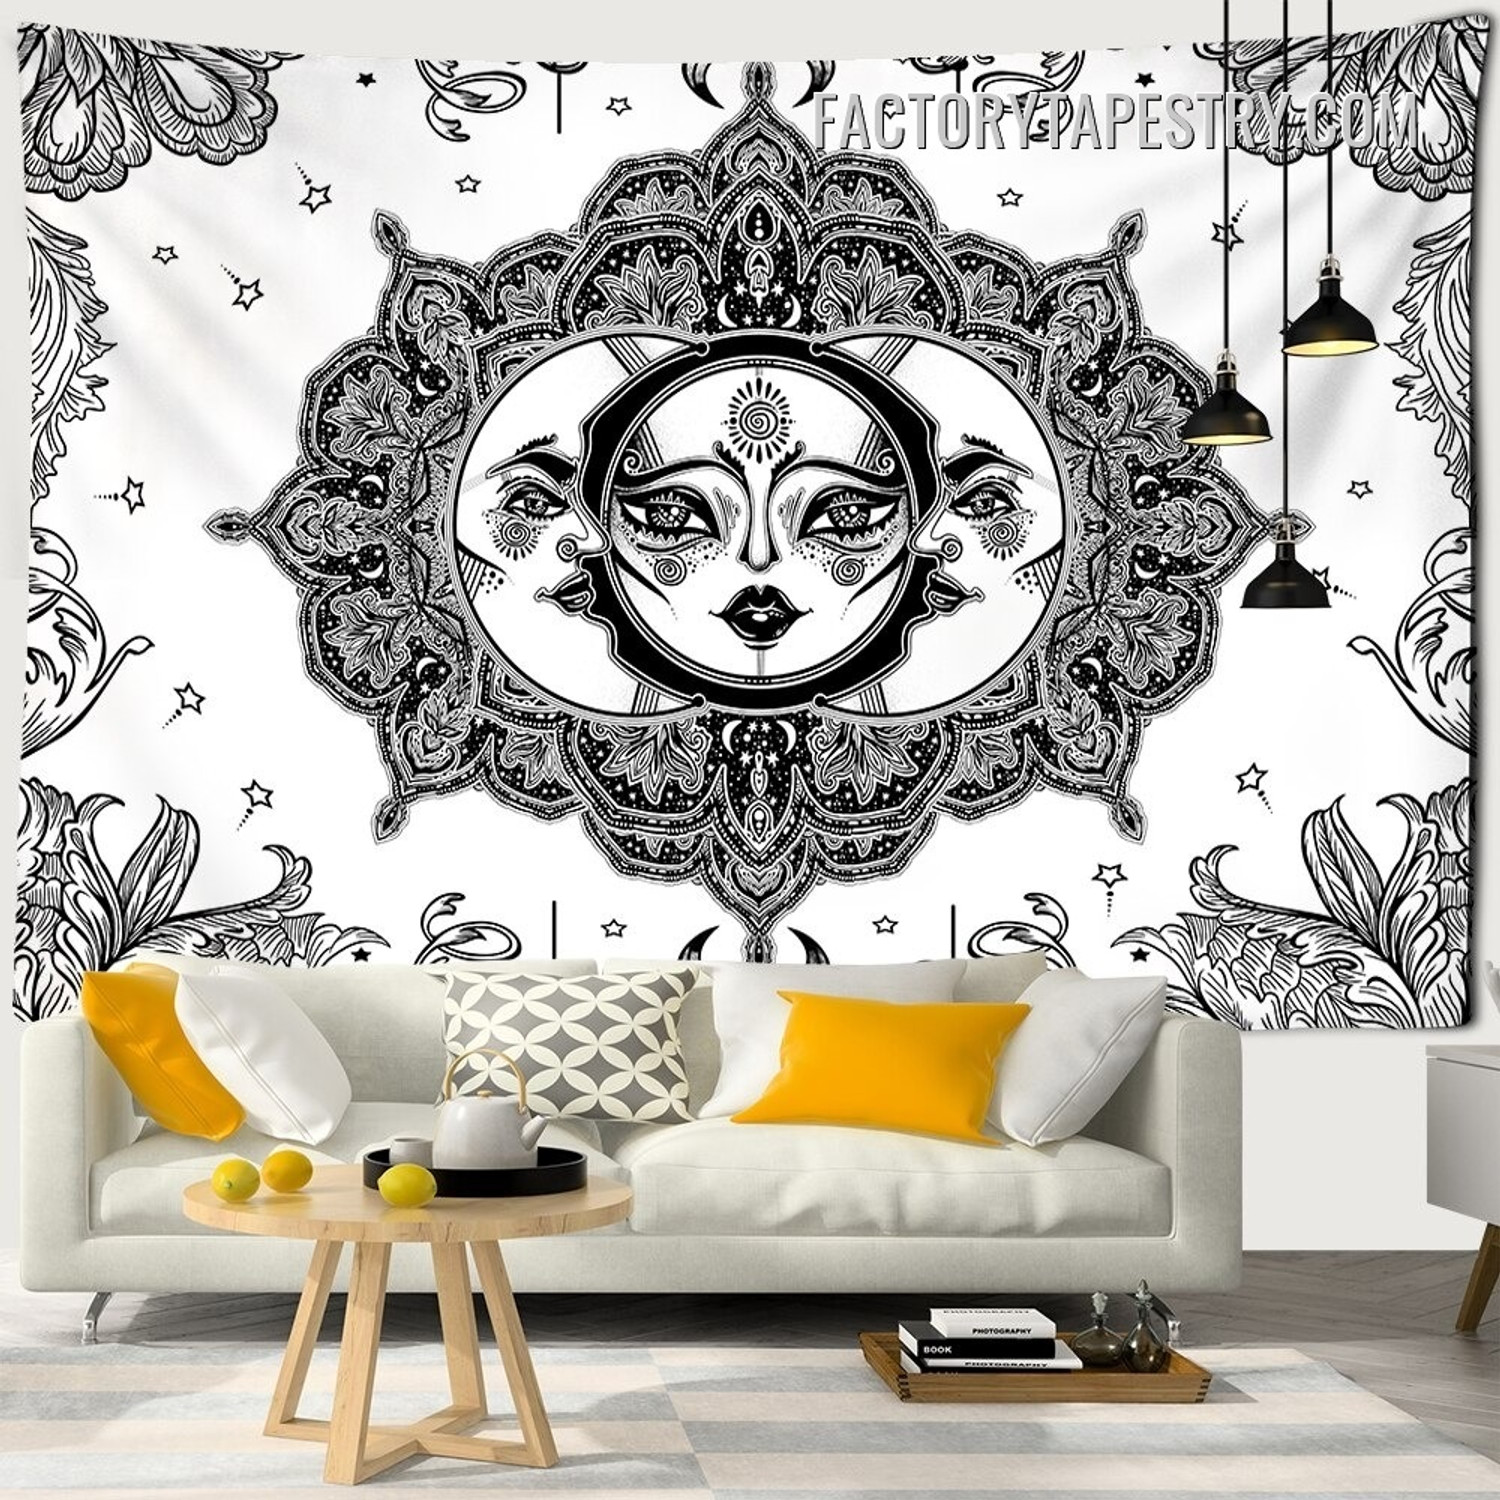 Mandala Sun Moon - factorytapestry.com